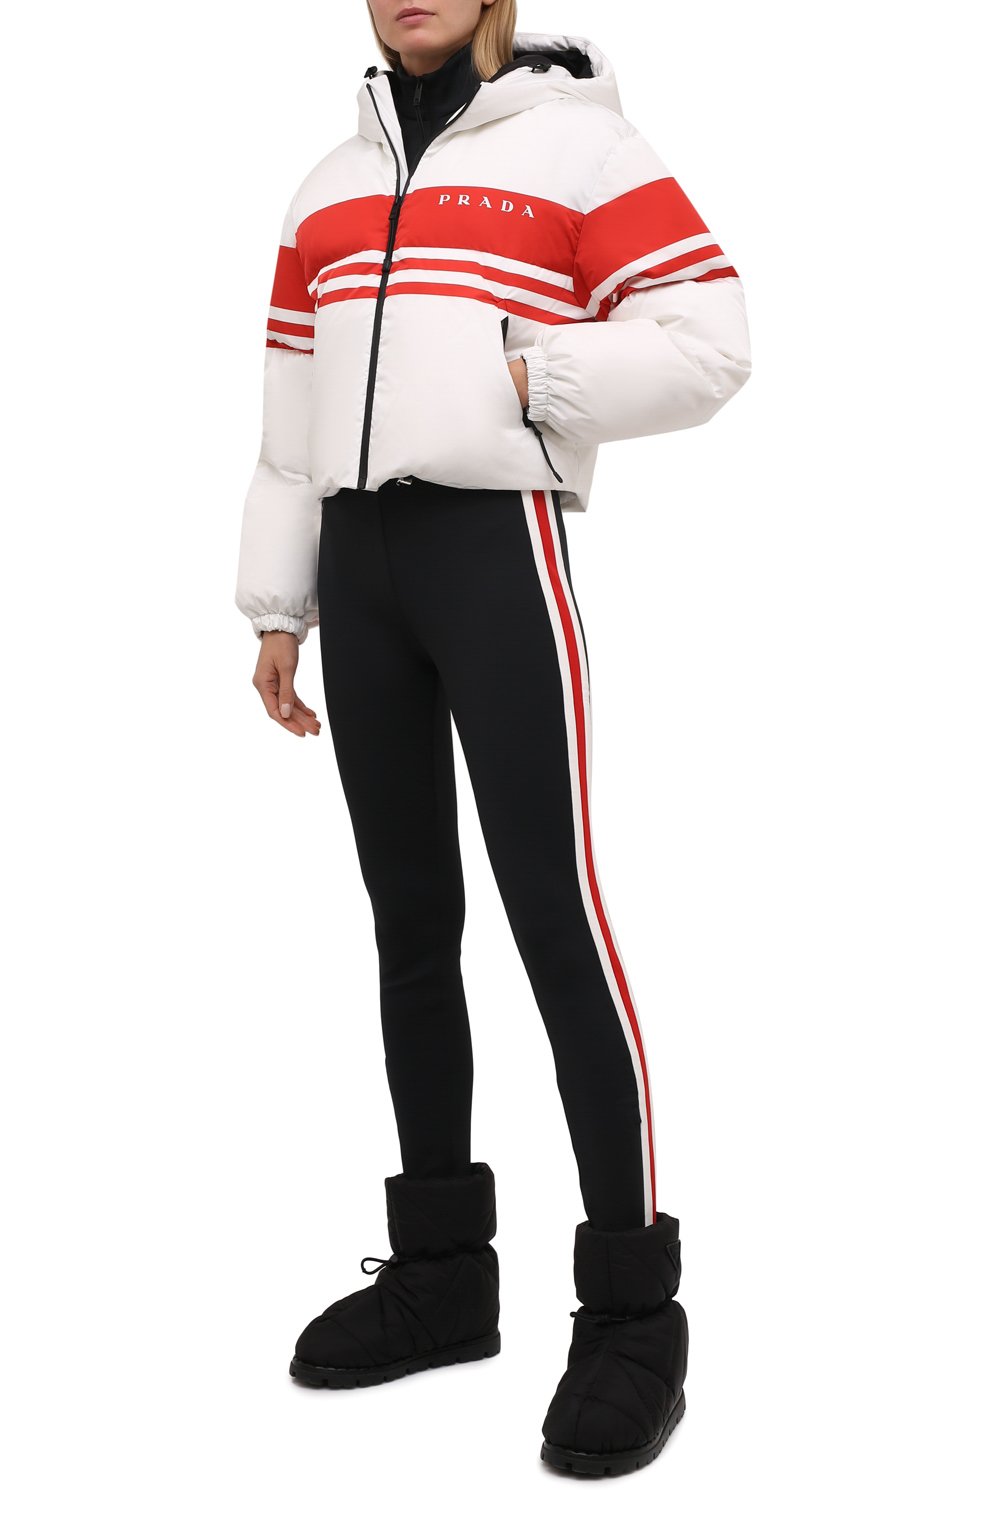 Женская утепленная куртка PRADA разноцветного цвета, арт. 29R698-10UY-F0970-212 | Фото 2 (Кросс-КТ: Ку�ртка, Утепленный, лыжи; Рукава: Длинные; Материал внешний: Синтетический материал; Стили: Спорт-шик; Длина (верхняя одежда): Короткие)